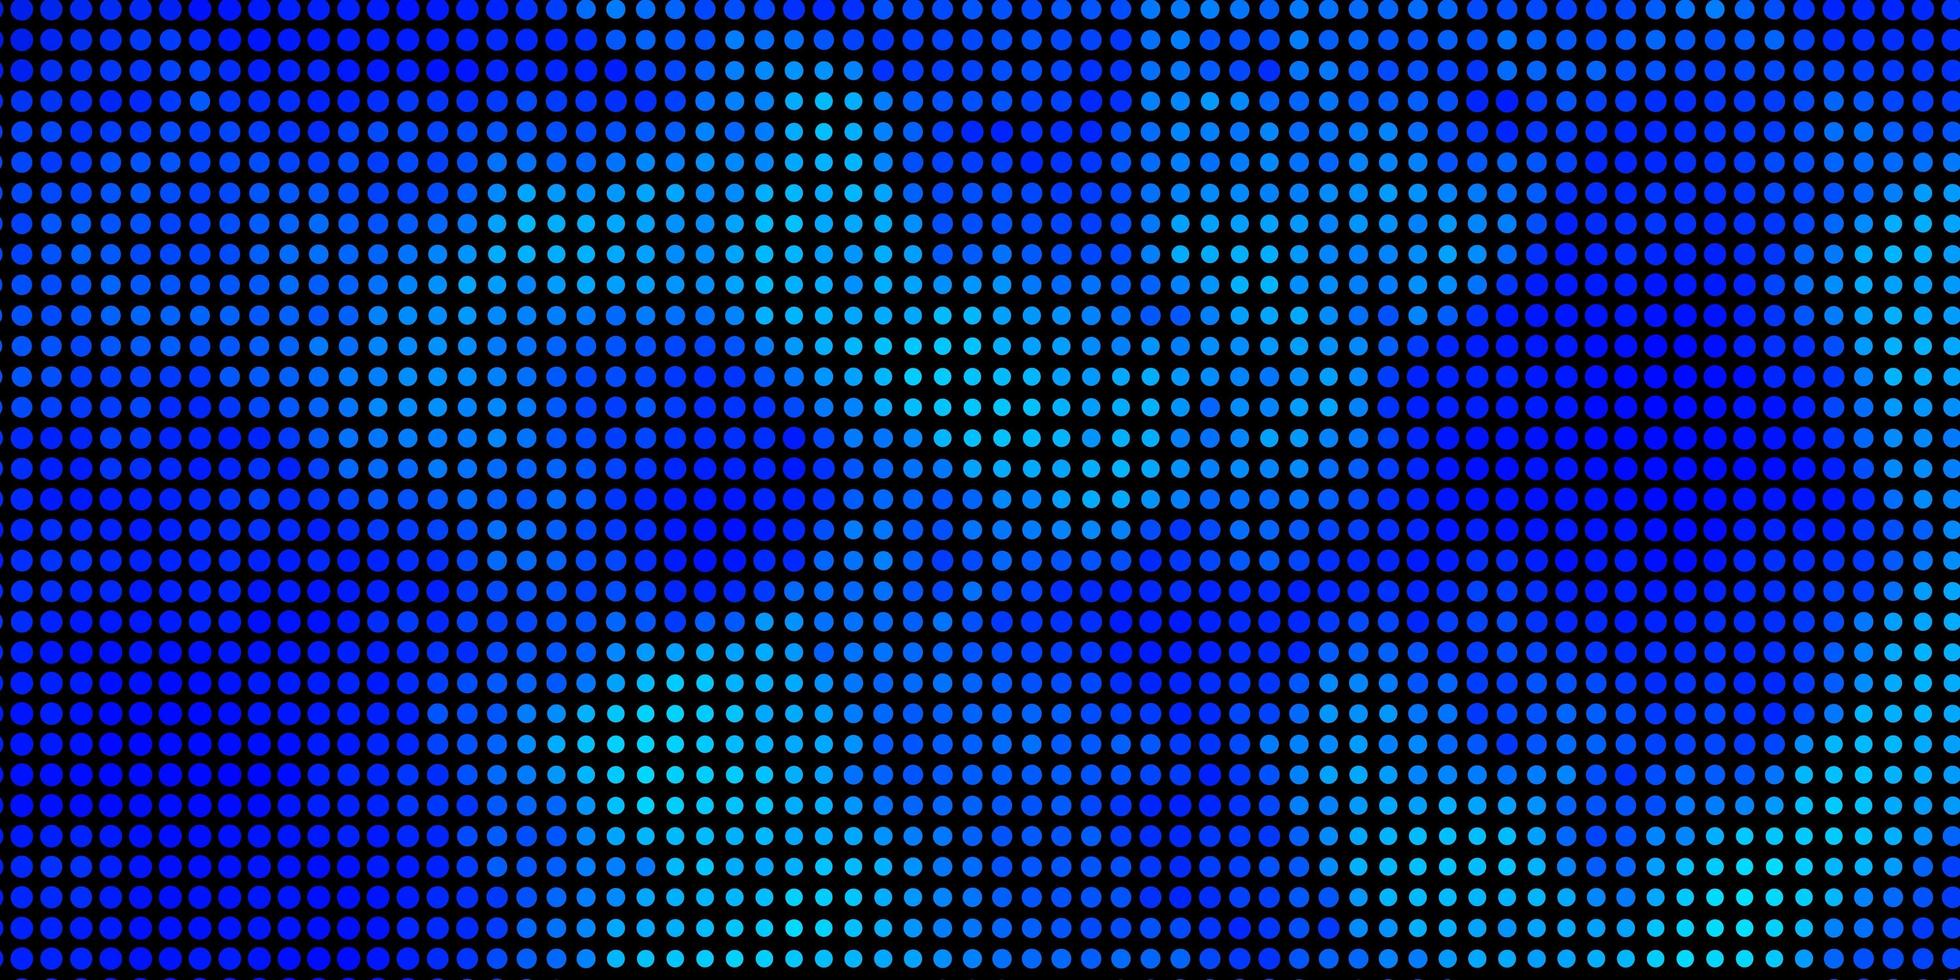 layout vettoriale azzurro con forme circolari. dischi colorati astratti su sfondo sfumato semplice. modello per libretti, volantini.